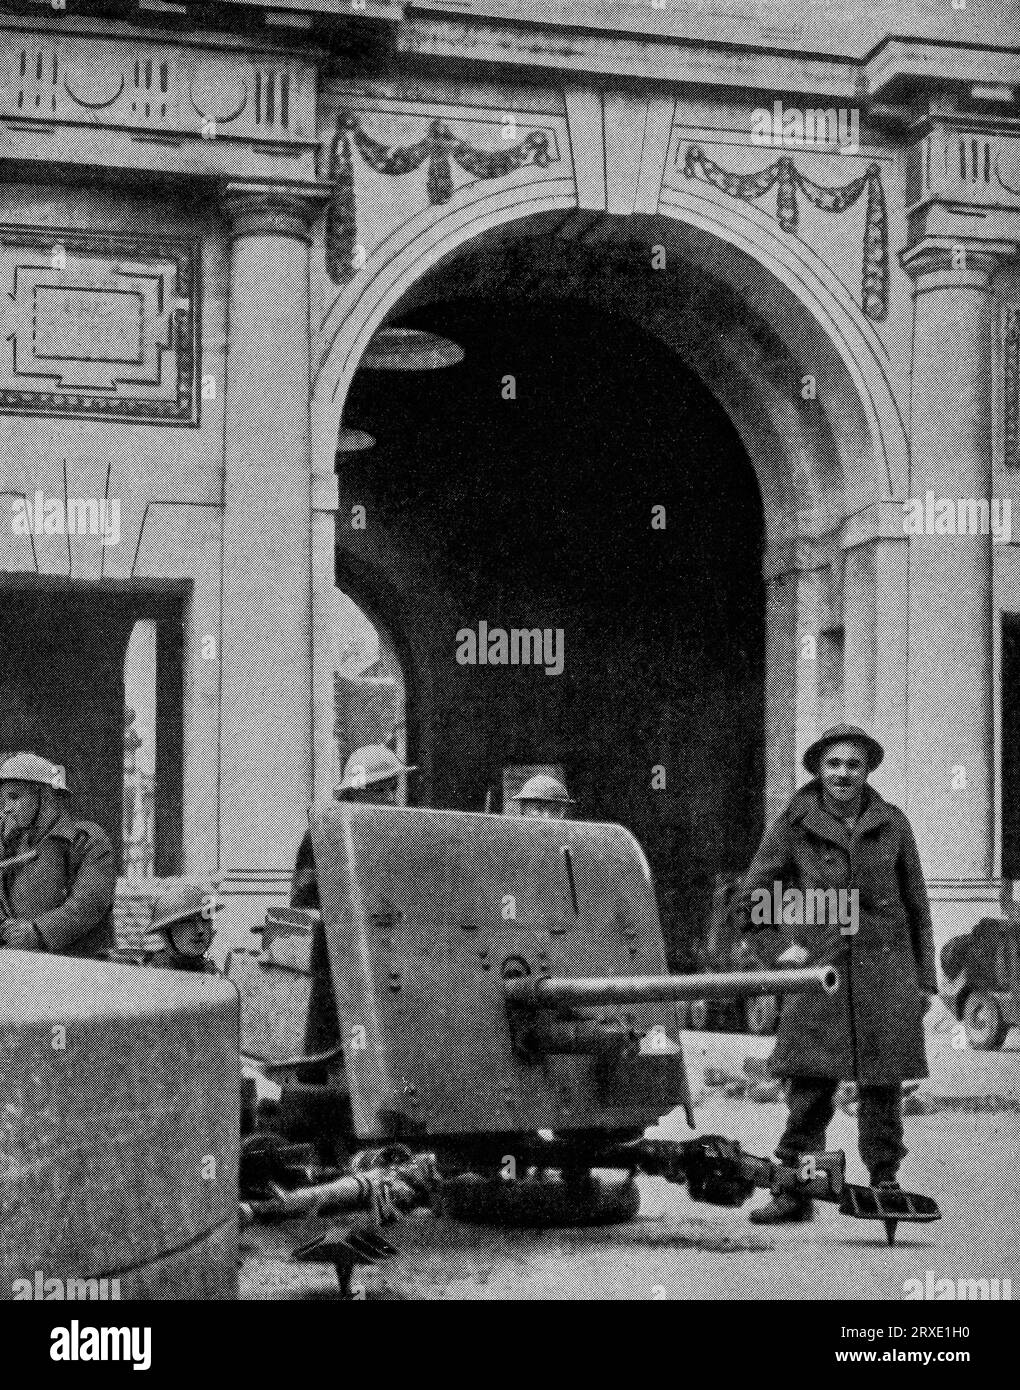 Des soldats du corps expéditionnaire britannique (BEF), occupant de l'artillerie de campagne près de la porte de Menin à Ypres, en Belgique, en mai 1940, avant la retraite à Dunkerque en France, pendant les premiers stades de la Seconde Guerre mondiale. Banque D'Images